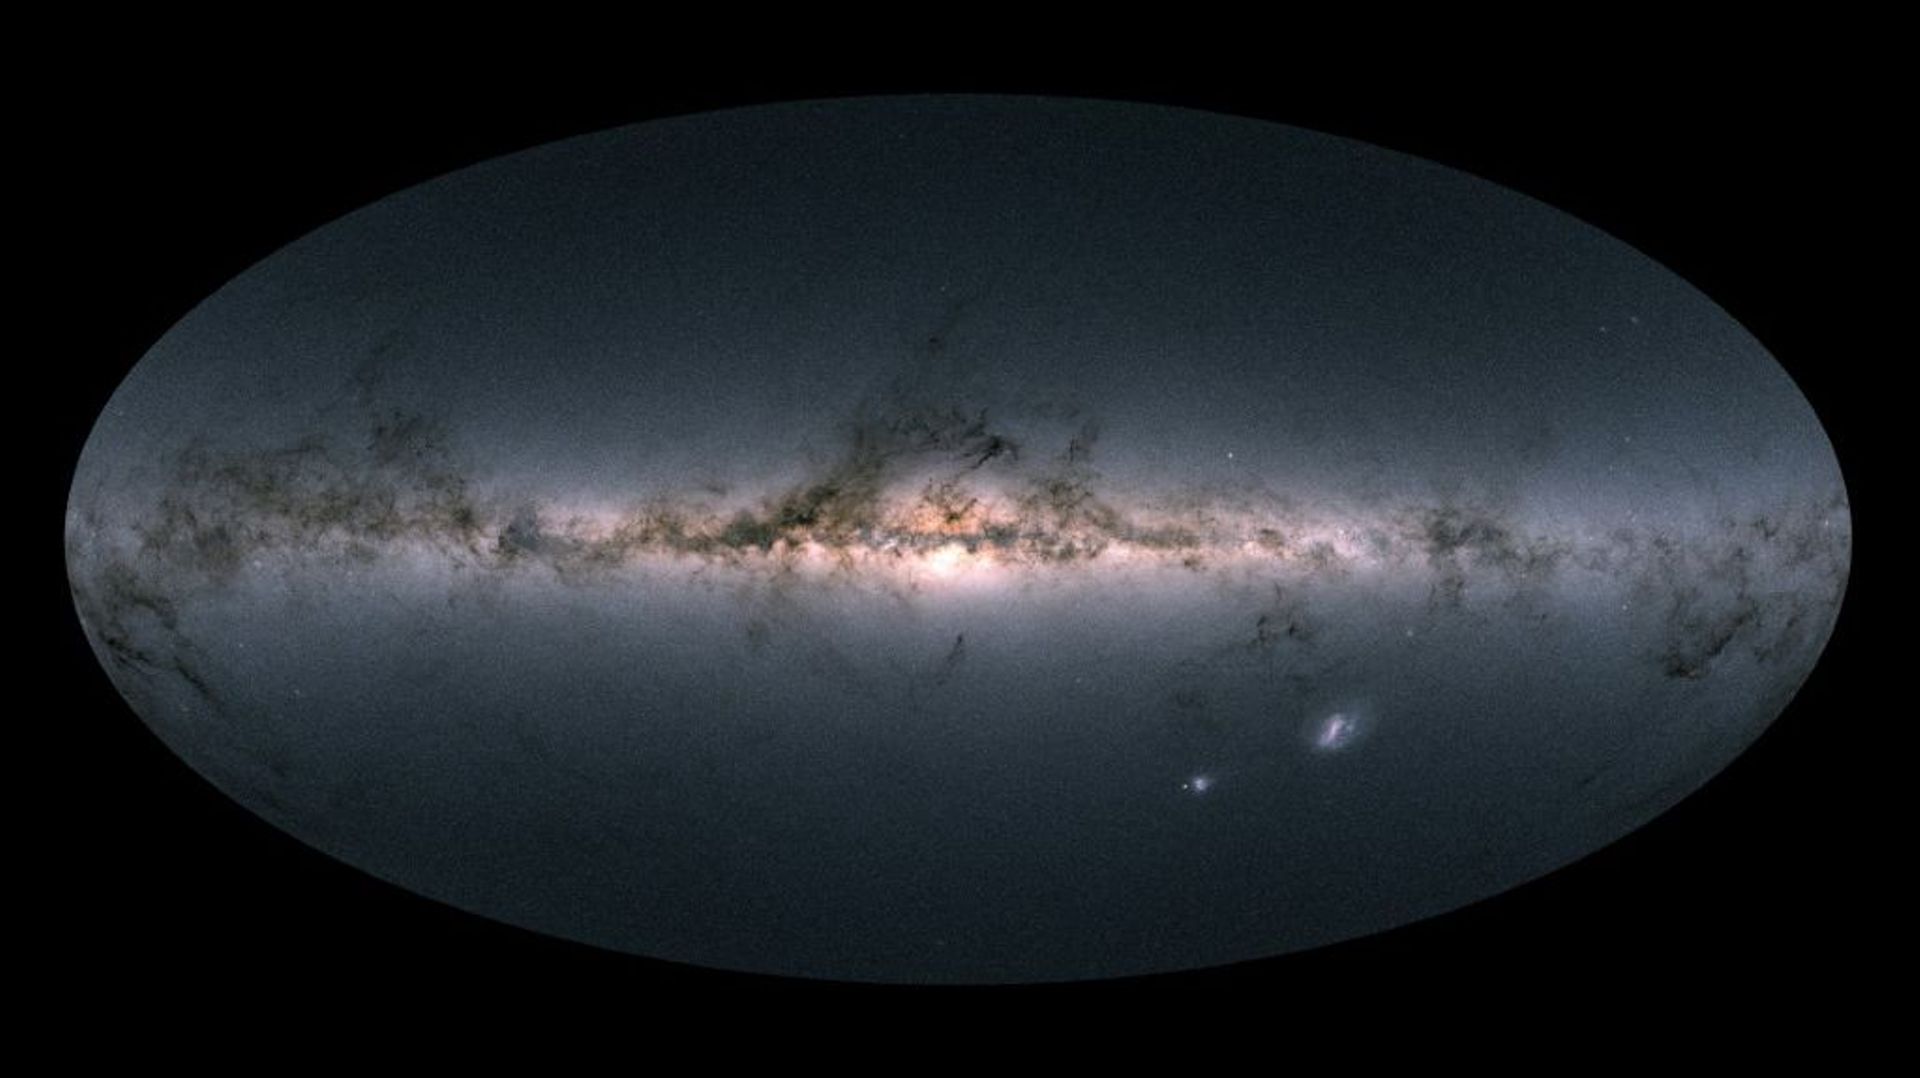 Vue de la Voie lactée et de proches galaxies réalisée par le satellite Gaia à partir de sa mesure de plus d'1,7 milliard d'étoiles, et fournie par l'Agence spatiale européenne le 25 avril 2018 